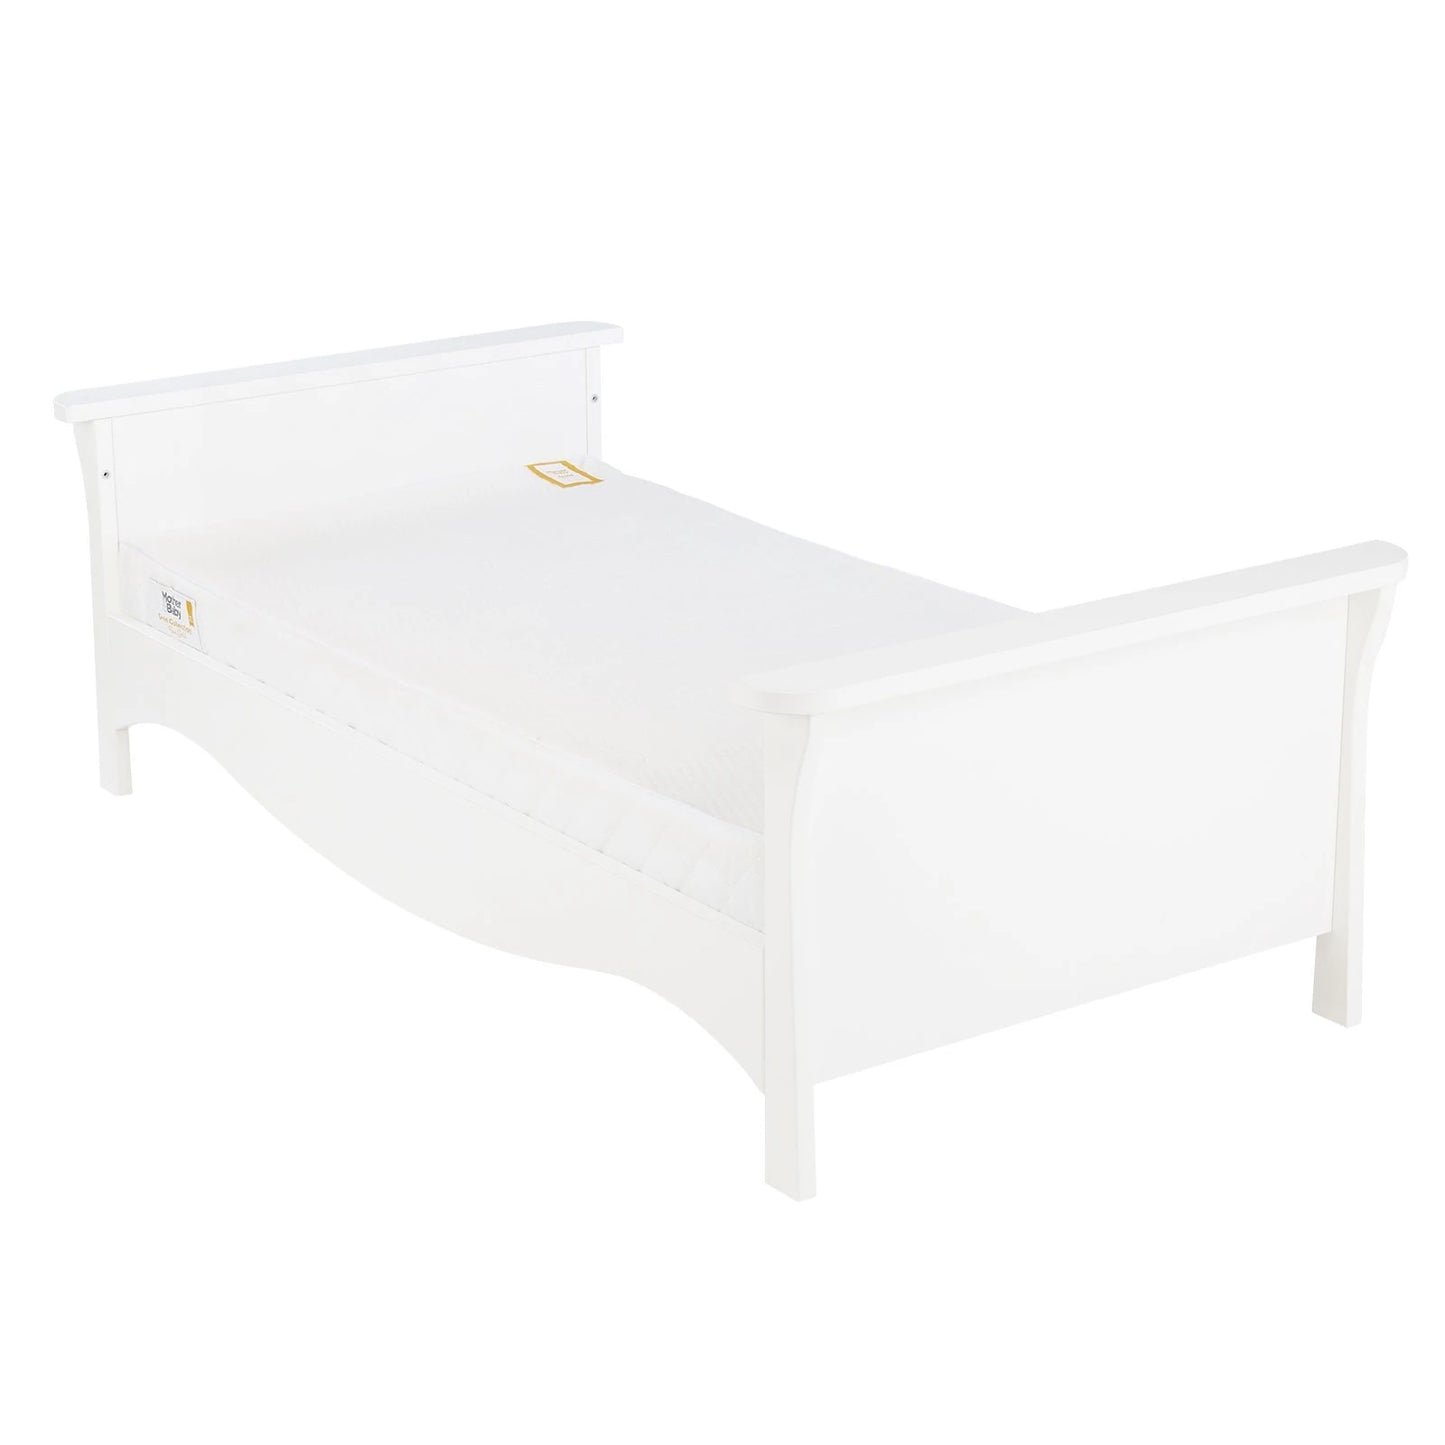 Cuddle Co Clara 3 Piece Nursery Furniture Set (Cot Bed, Wardrobe & Dresser) - White